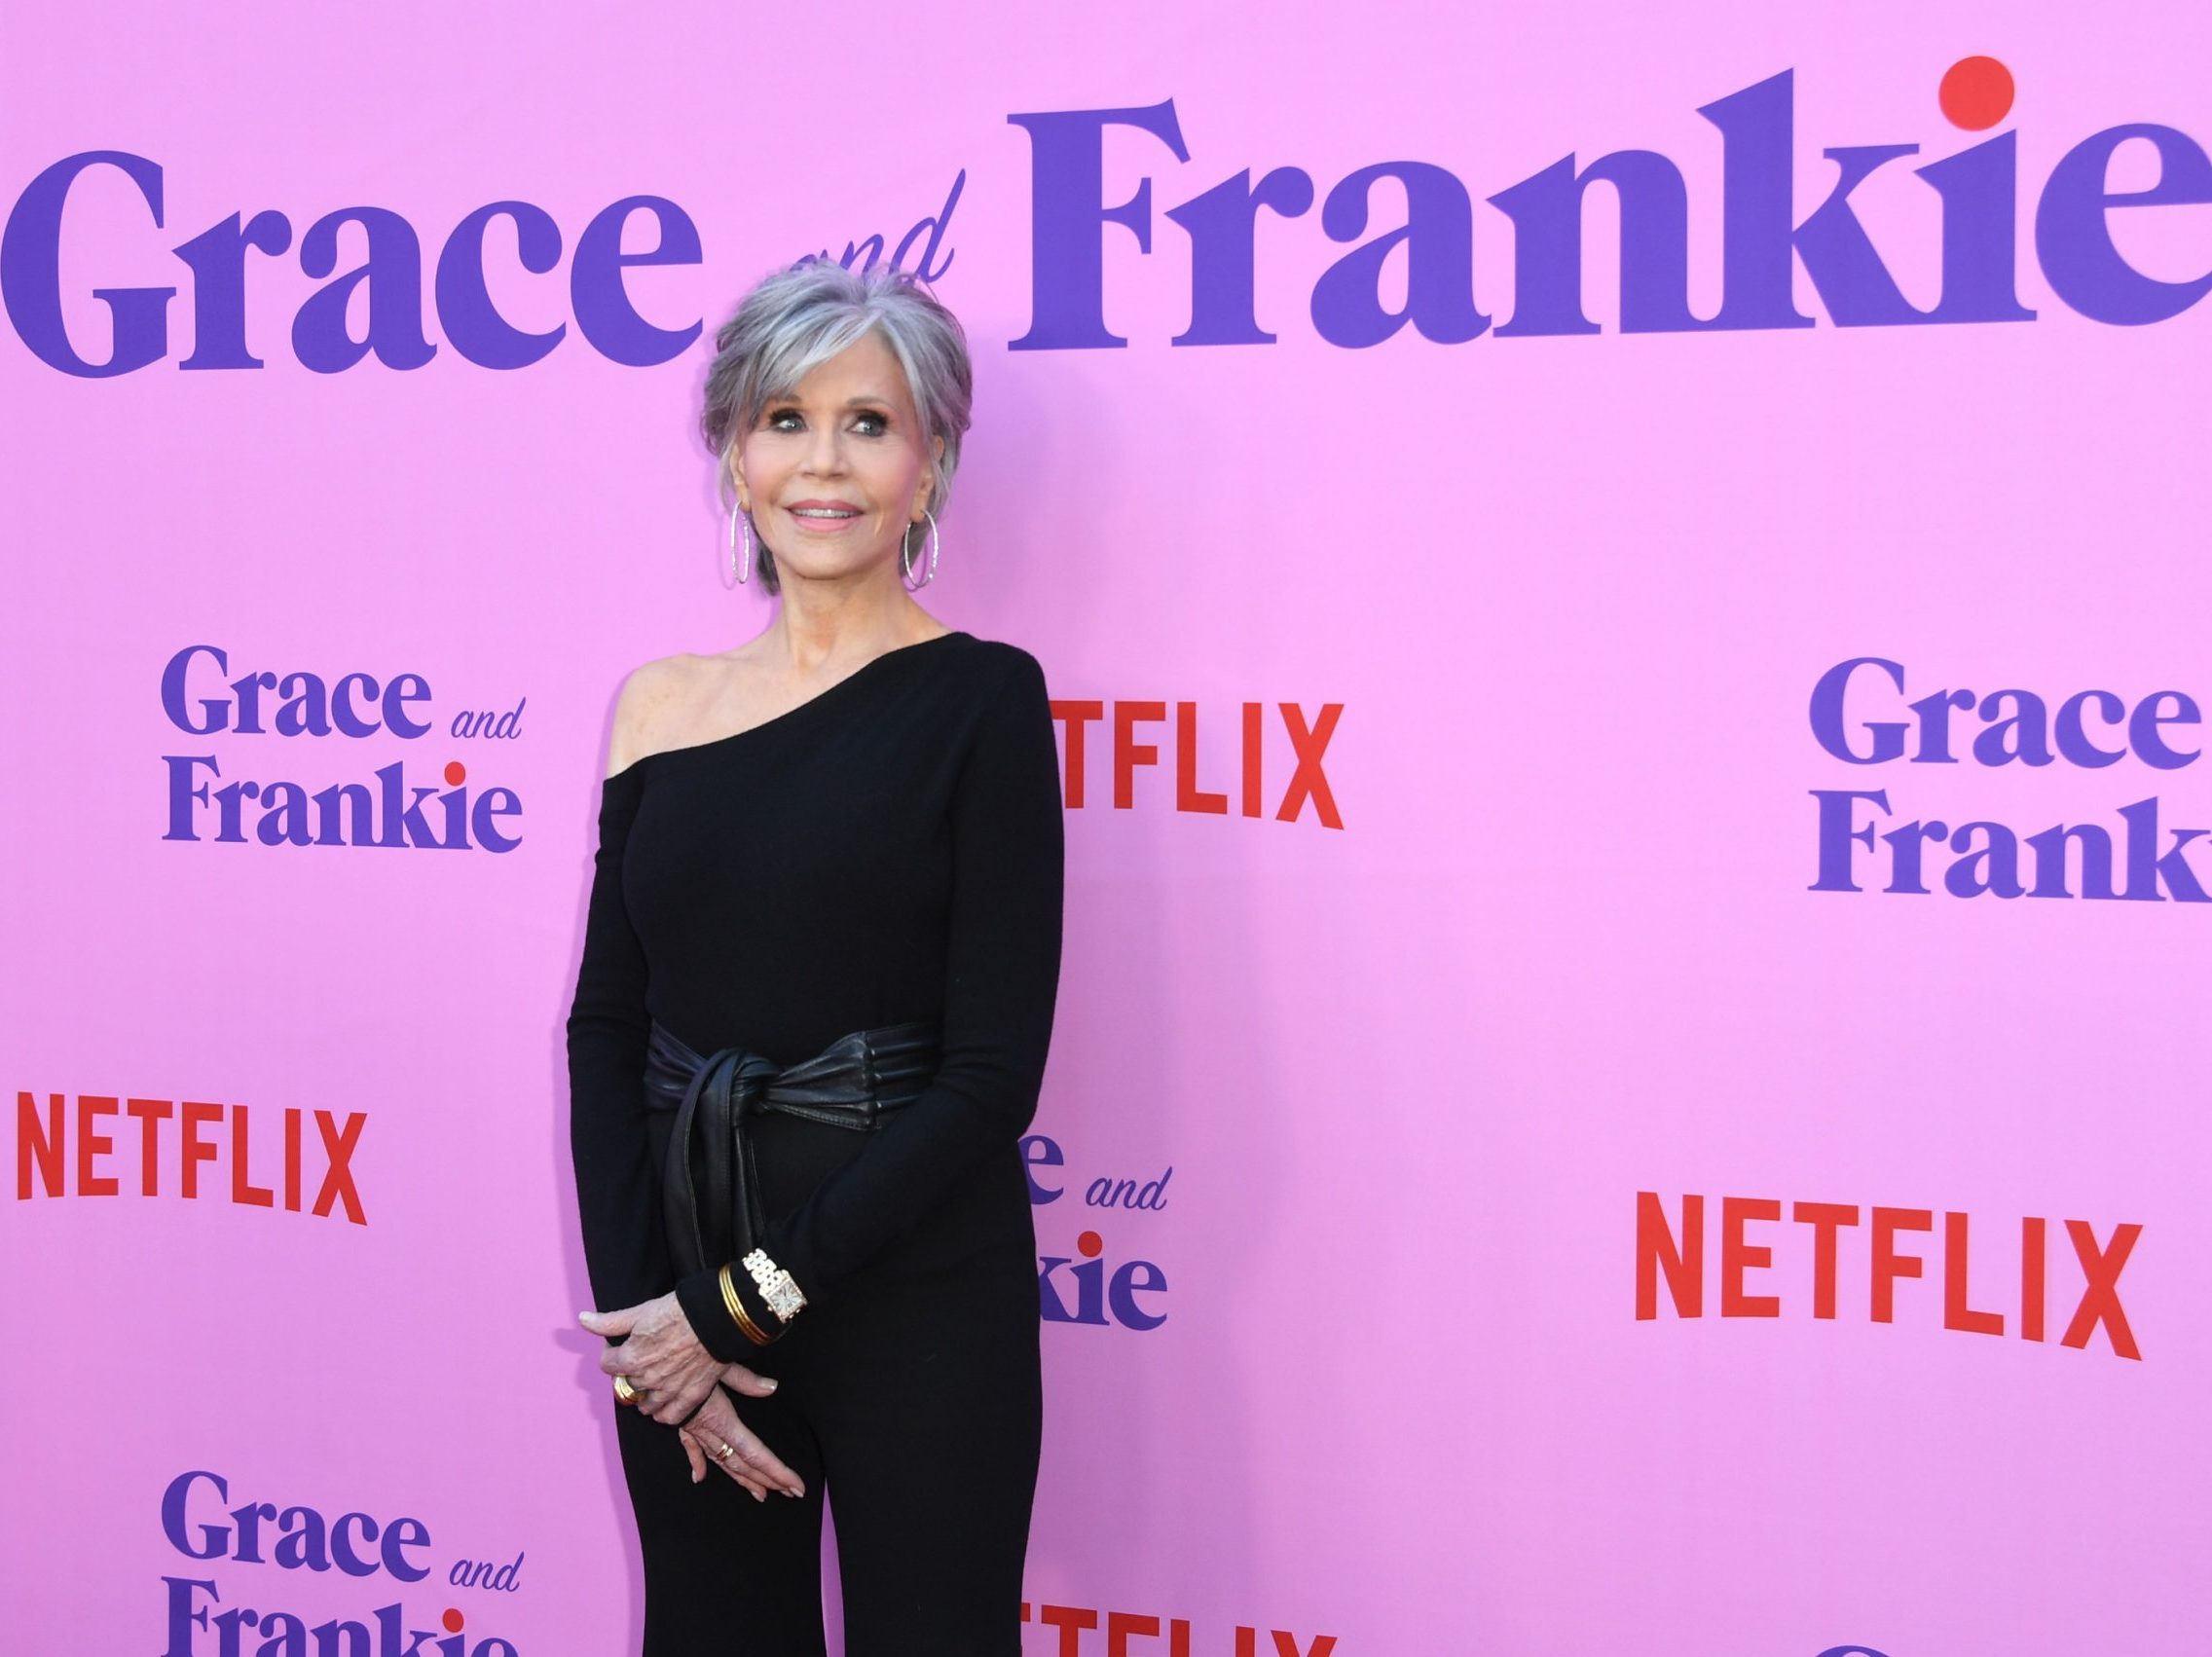 5 διατροφικές συνήθειες που ακολουθεί η Jane Fonda. Και είναι θεά(ρα) στα 84